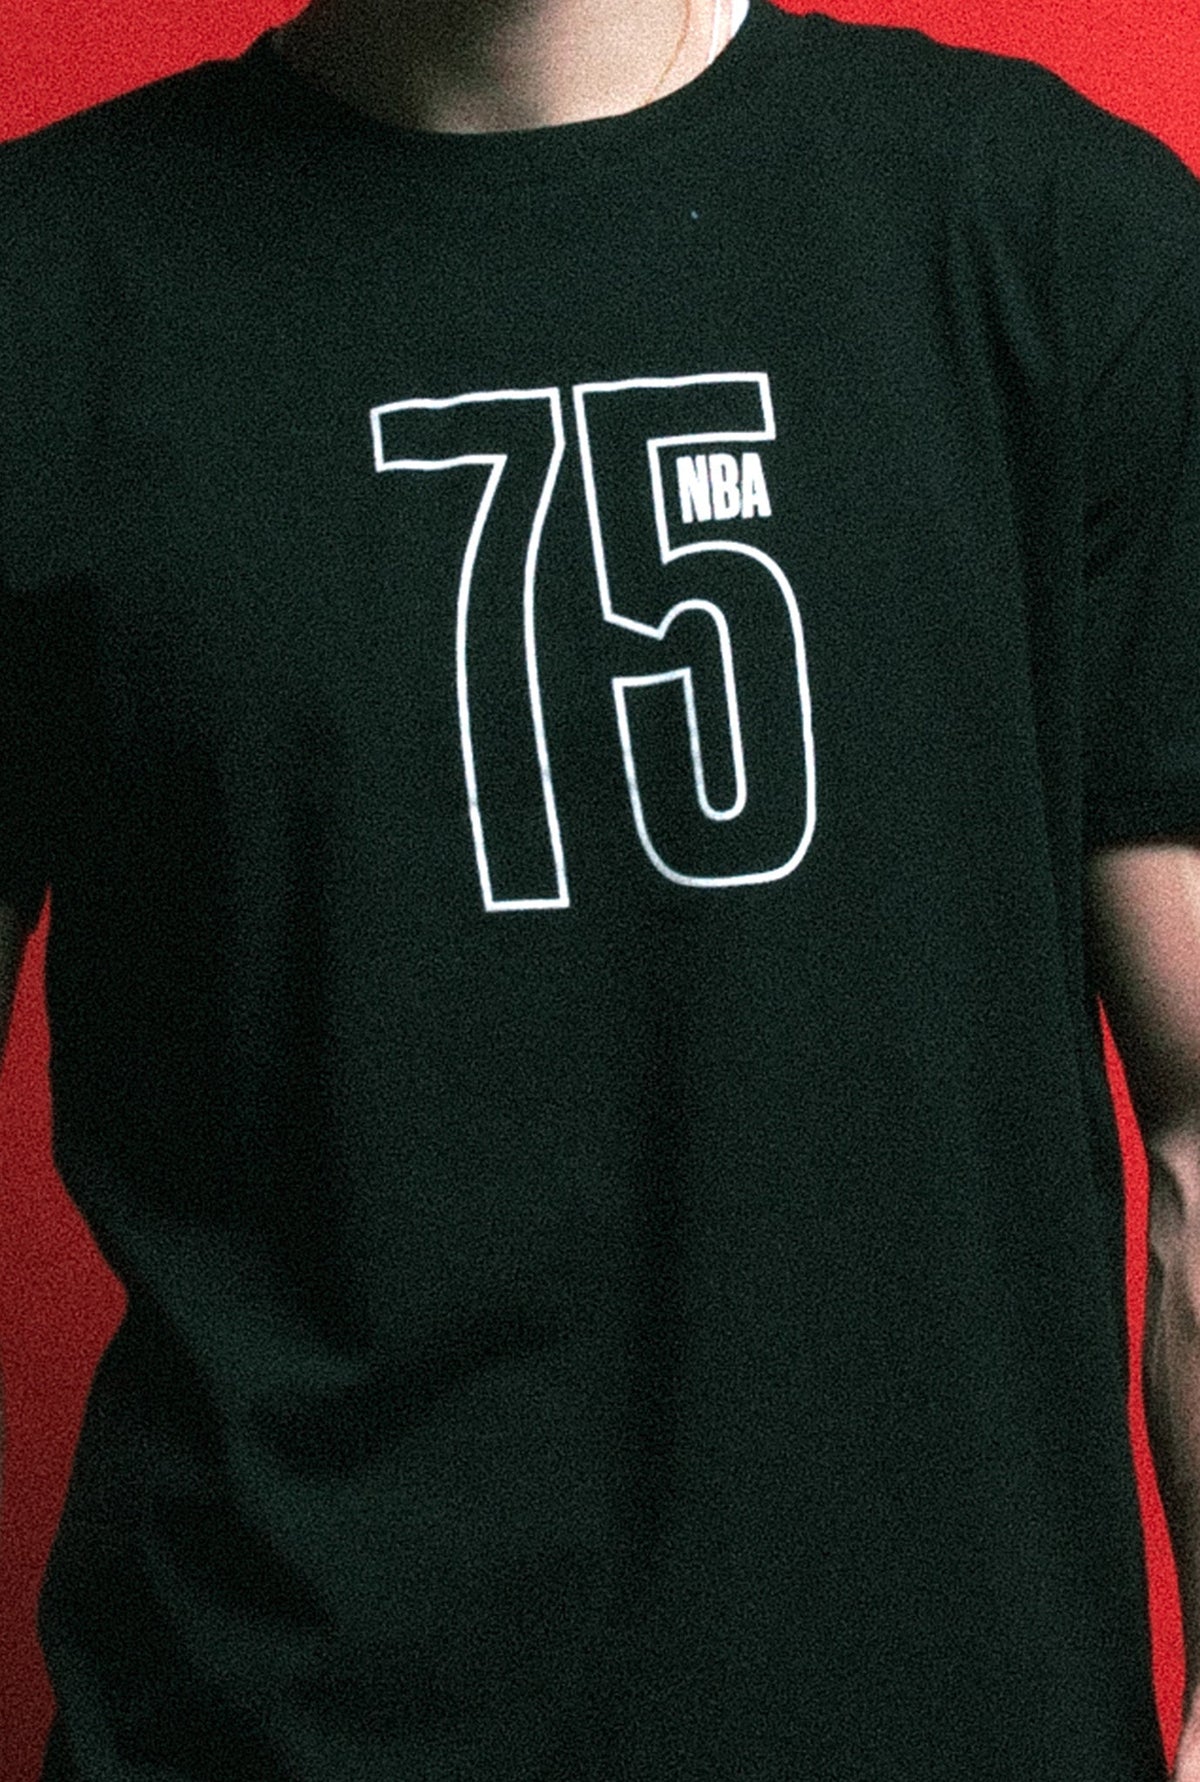 NBA 75th Anniversary T-Shirt - Black